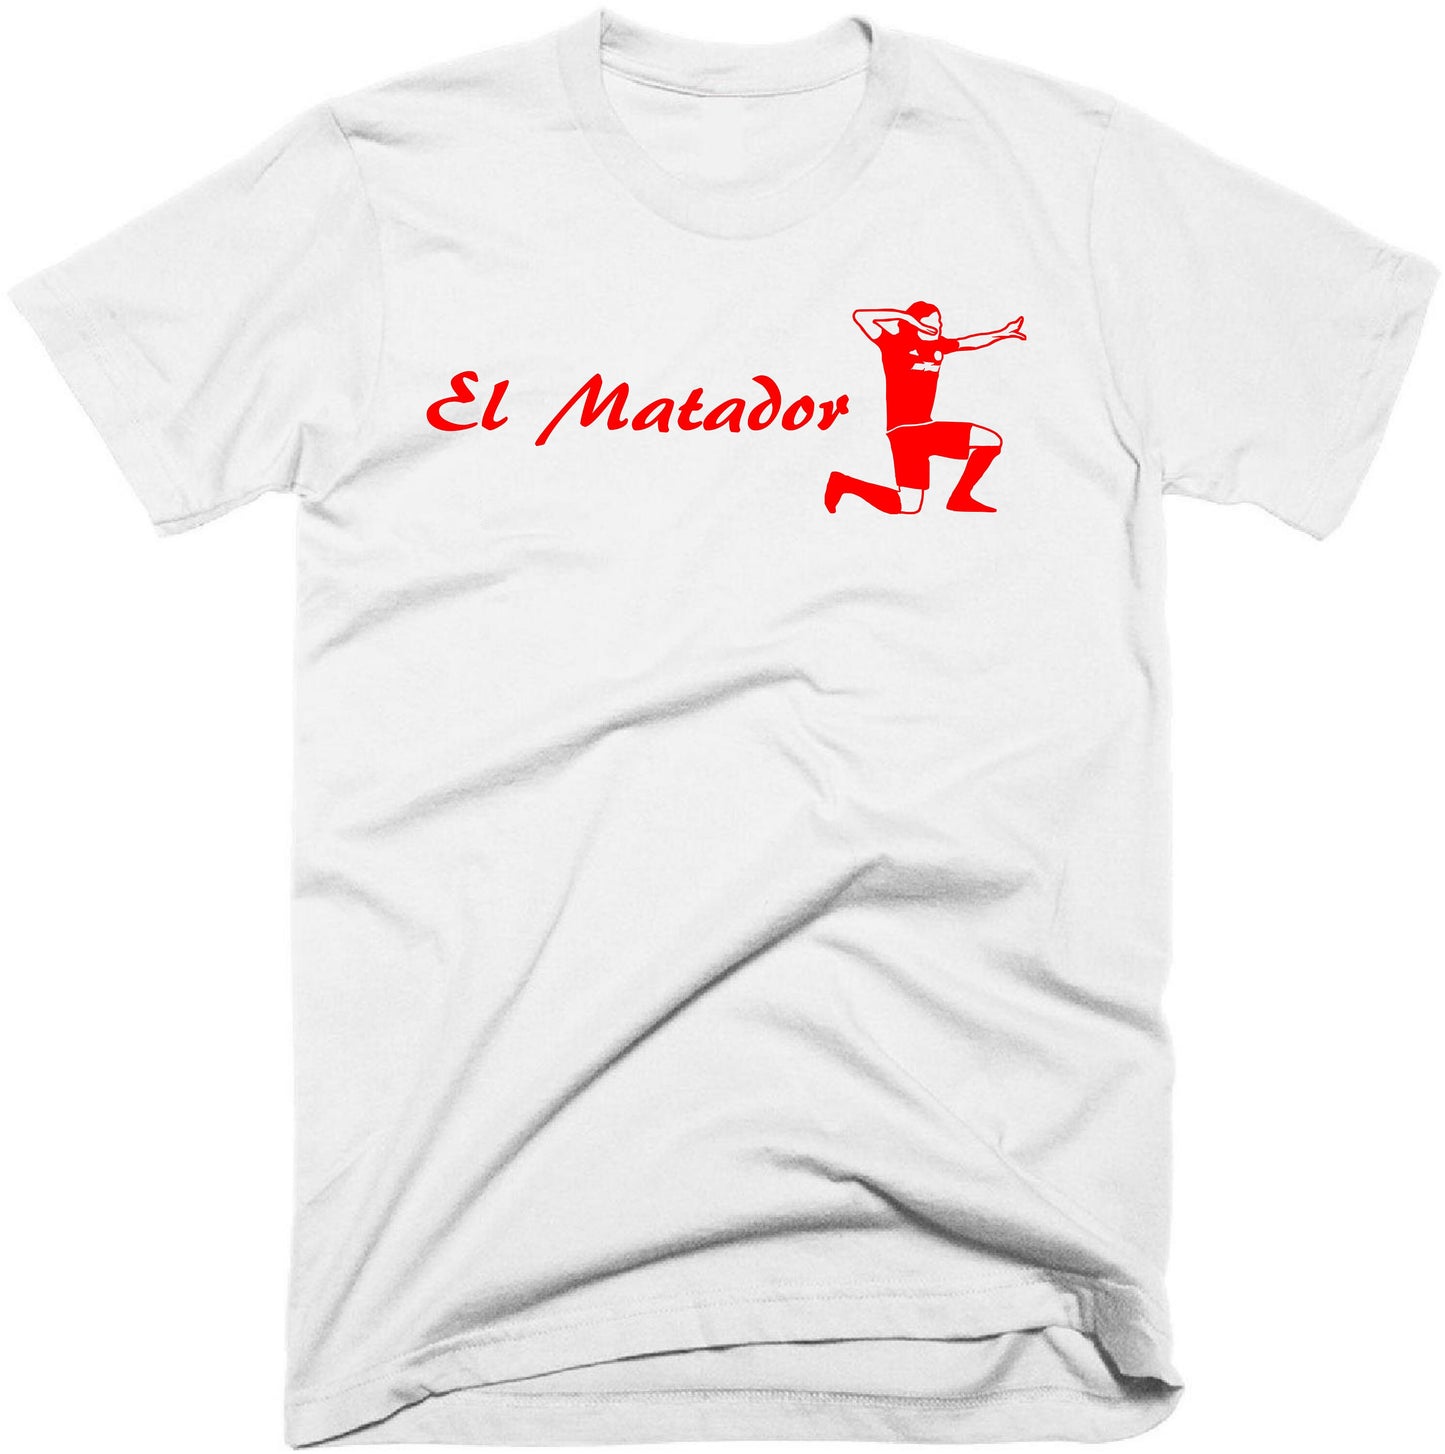 El Matador - Edinson Cavani t-shirt - TEXT OPTIONAL